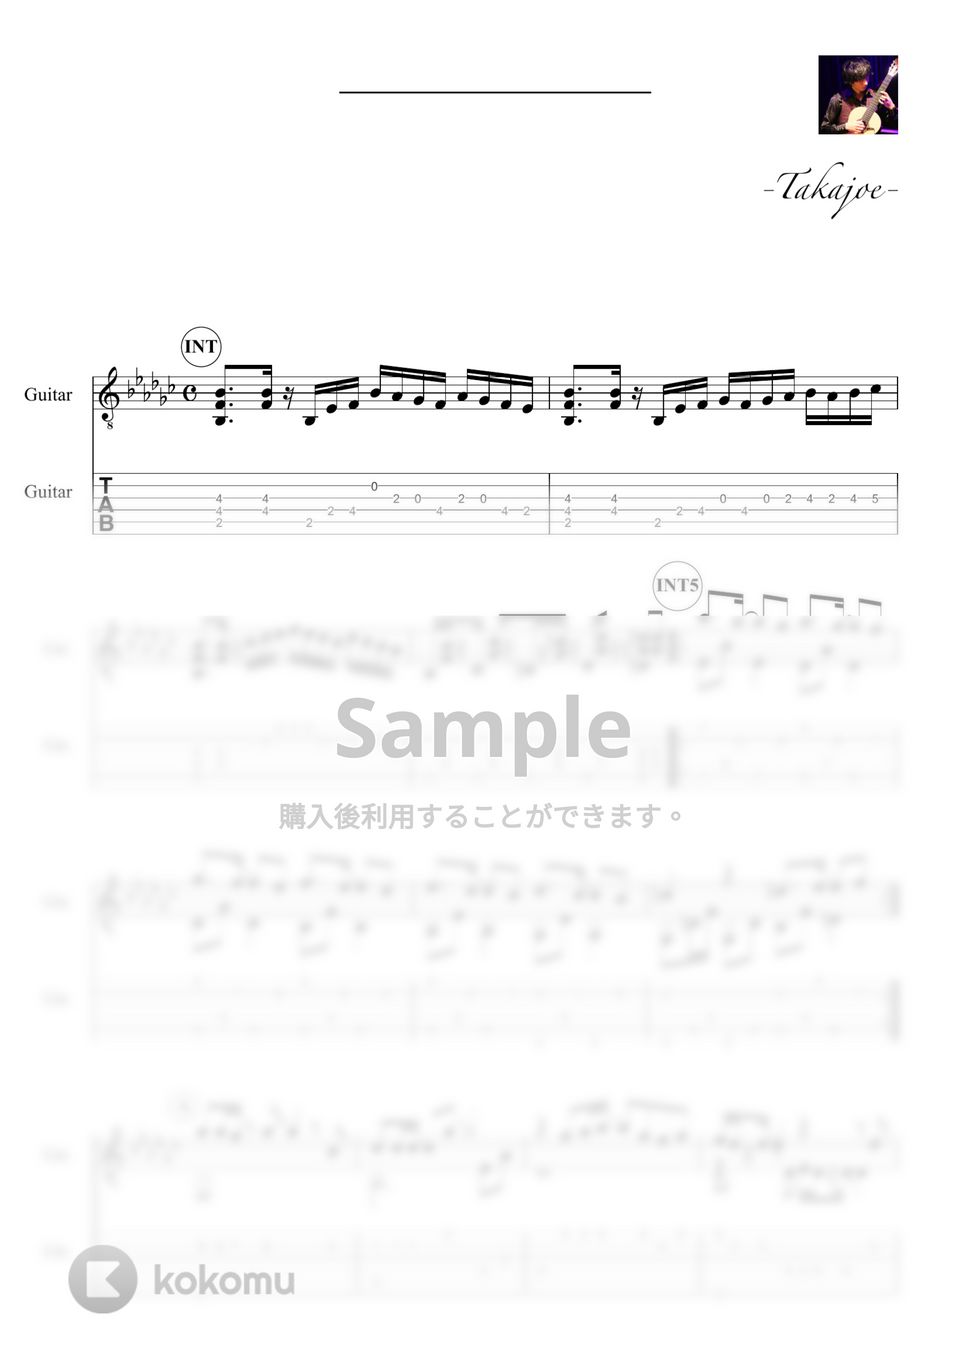 乃木坂46 - インフルエンサー by 鷹城-Takajoe-